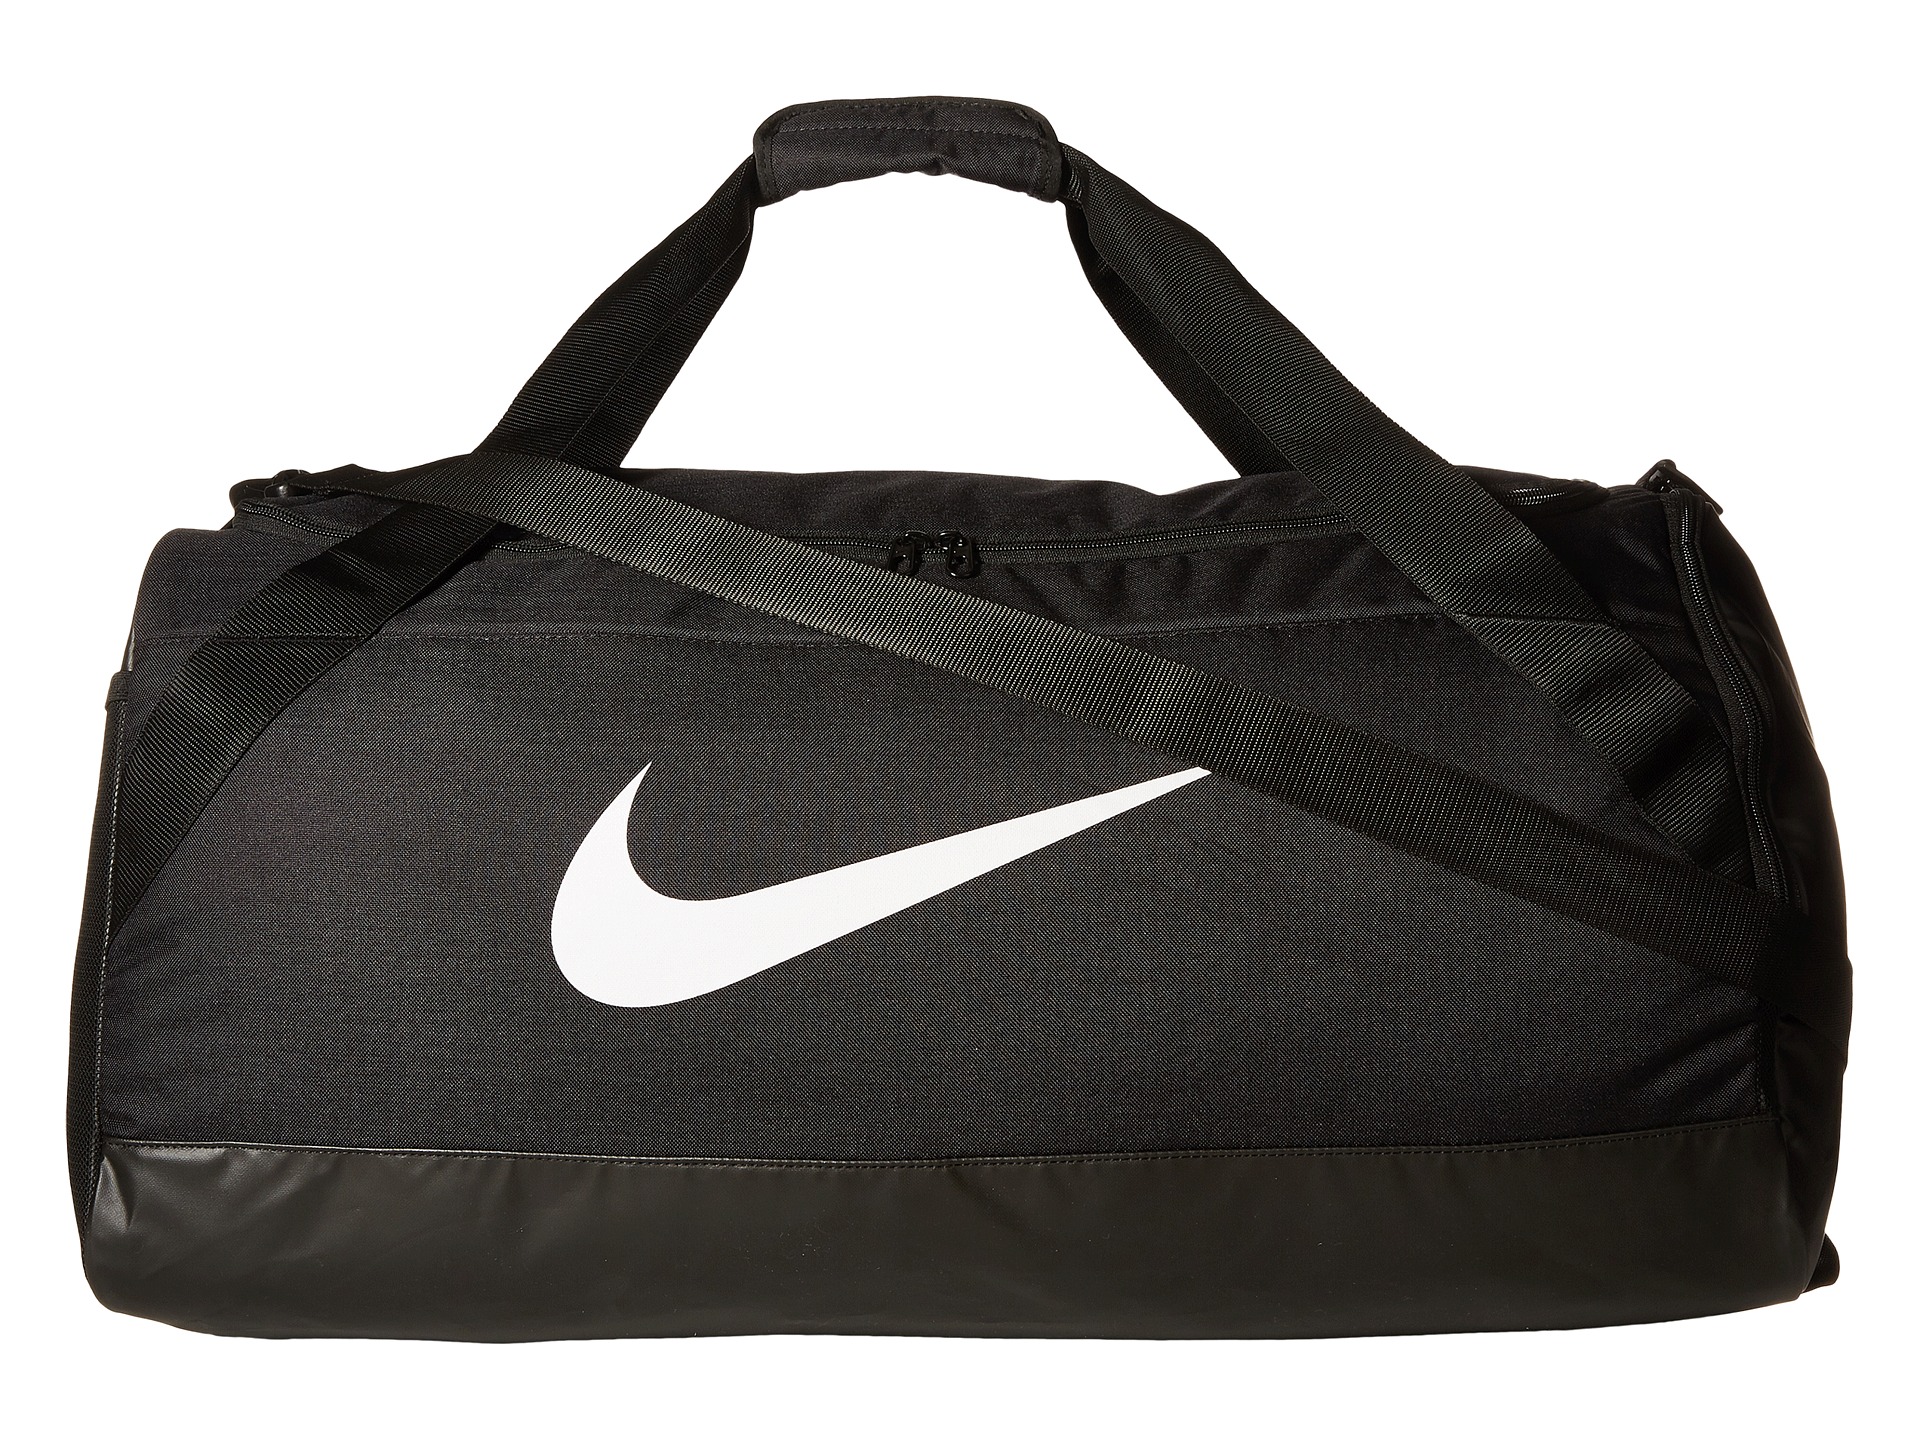 Nike Brasilia Large Duffel Bag at 0